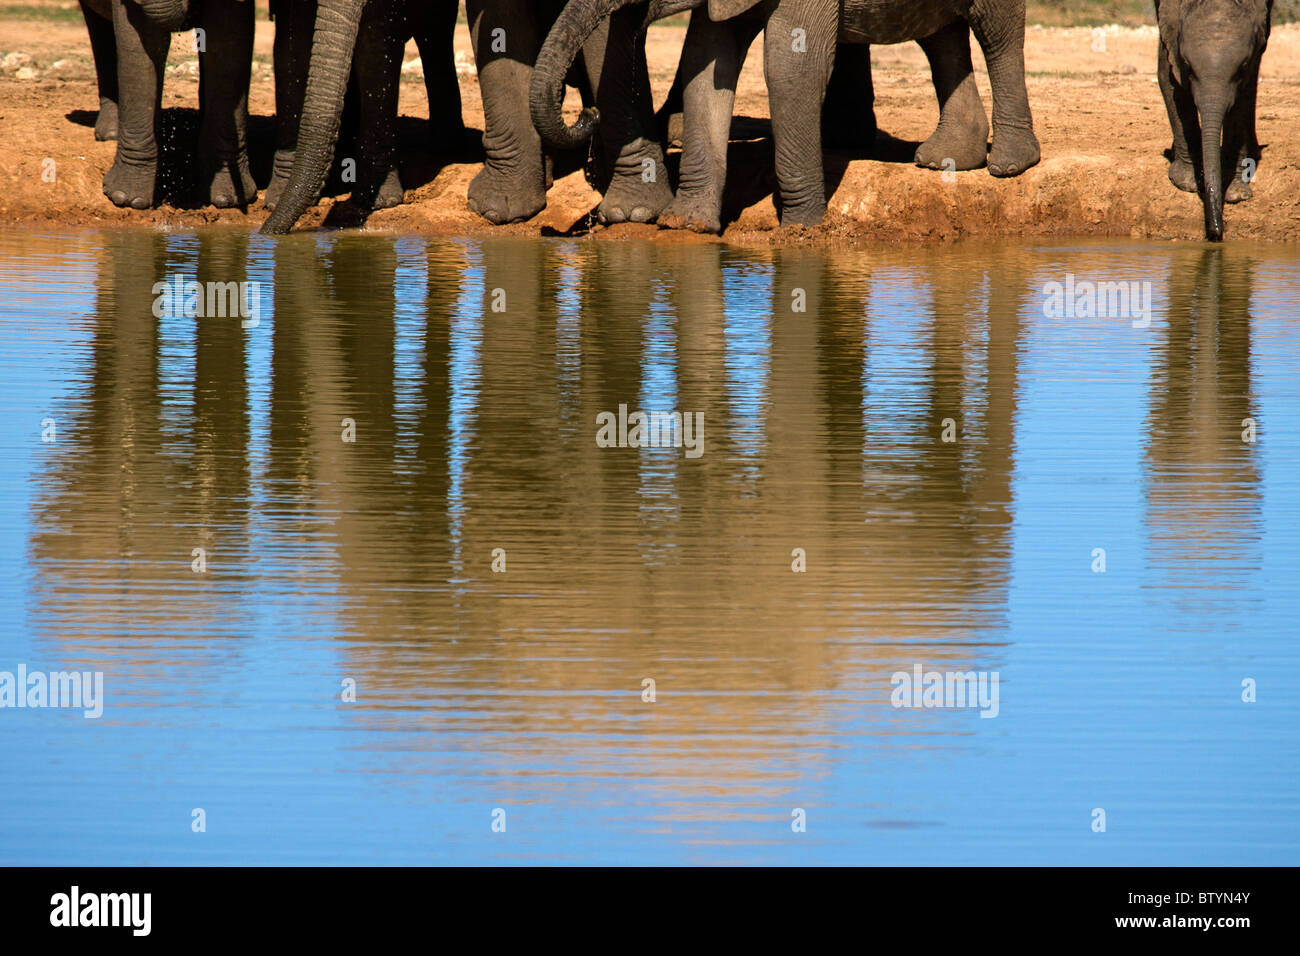 Una famiglia assetata di grande elefante bere acqua fresca in una grossa pozza. La nuova nata di destra è rischiare di andare in acqua... Foto Stock